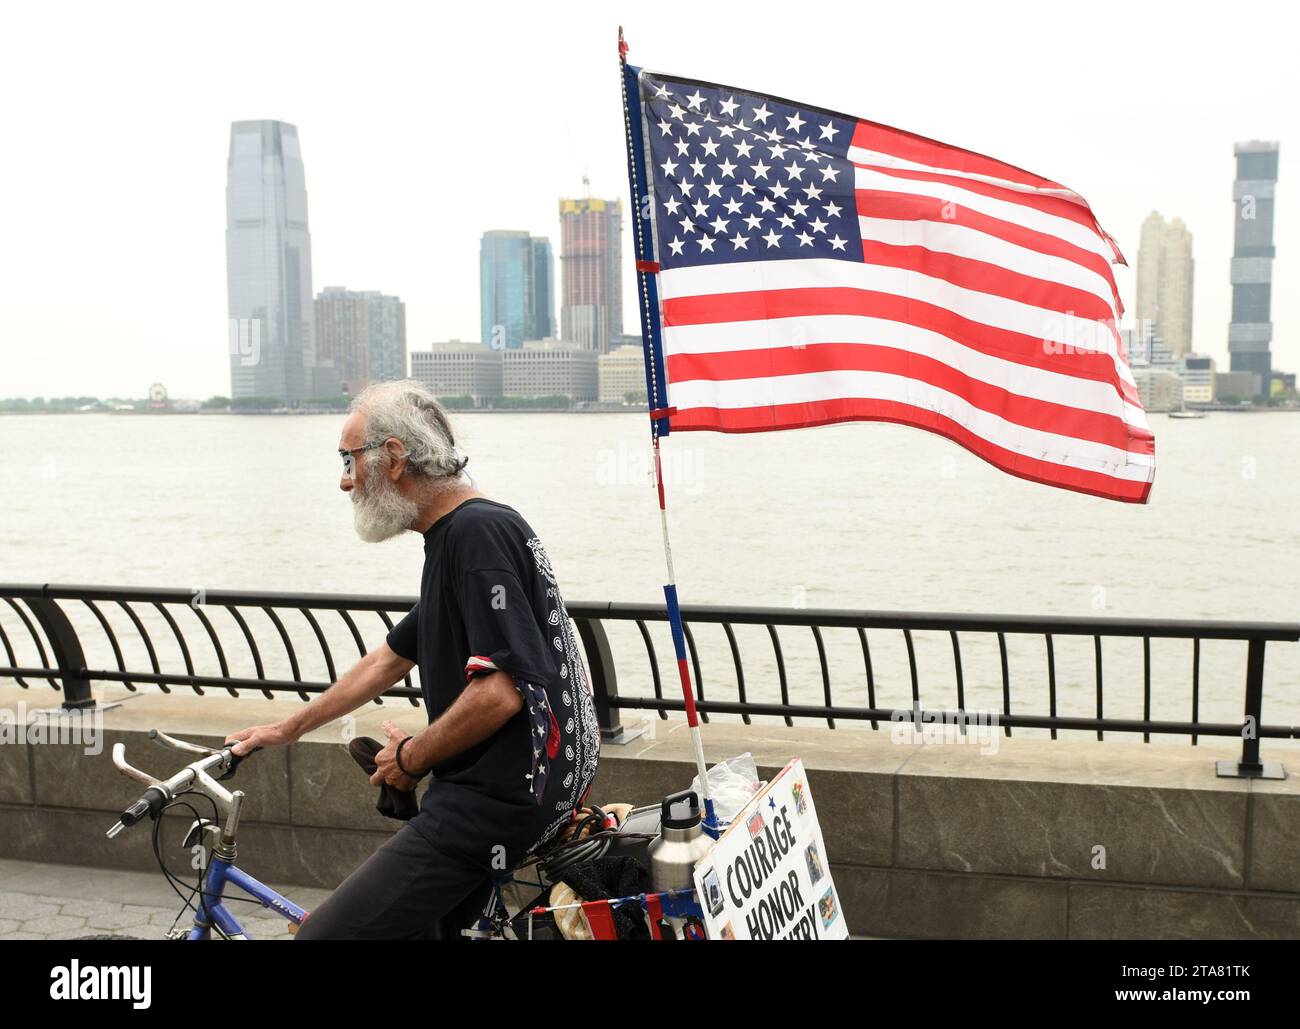 New York, USA - 28. Mai 2018: Ein Mann mit US-Flagge auf einem Fahrrad in der Battery Park City Esplanade in New York. Stockfoto